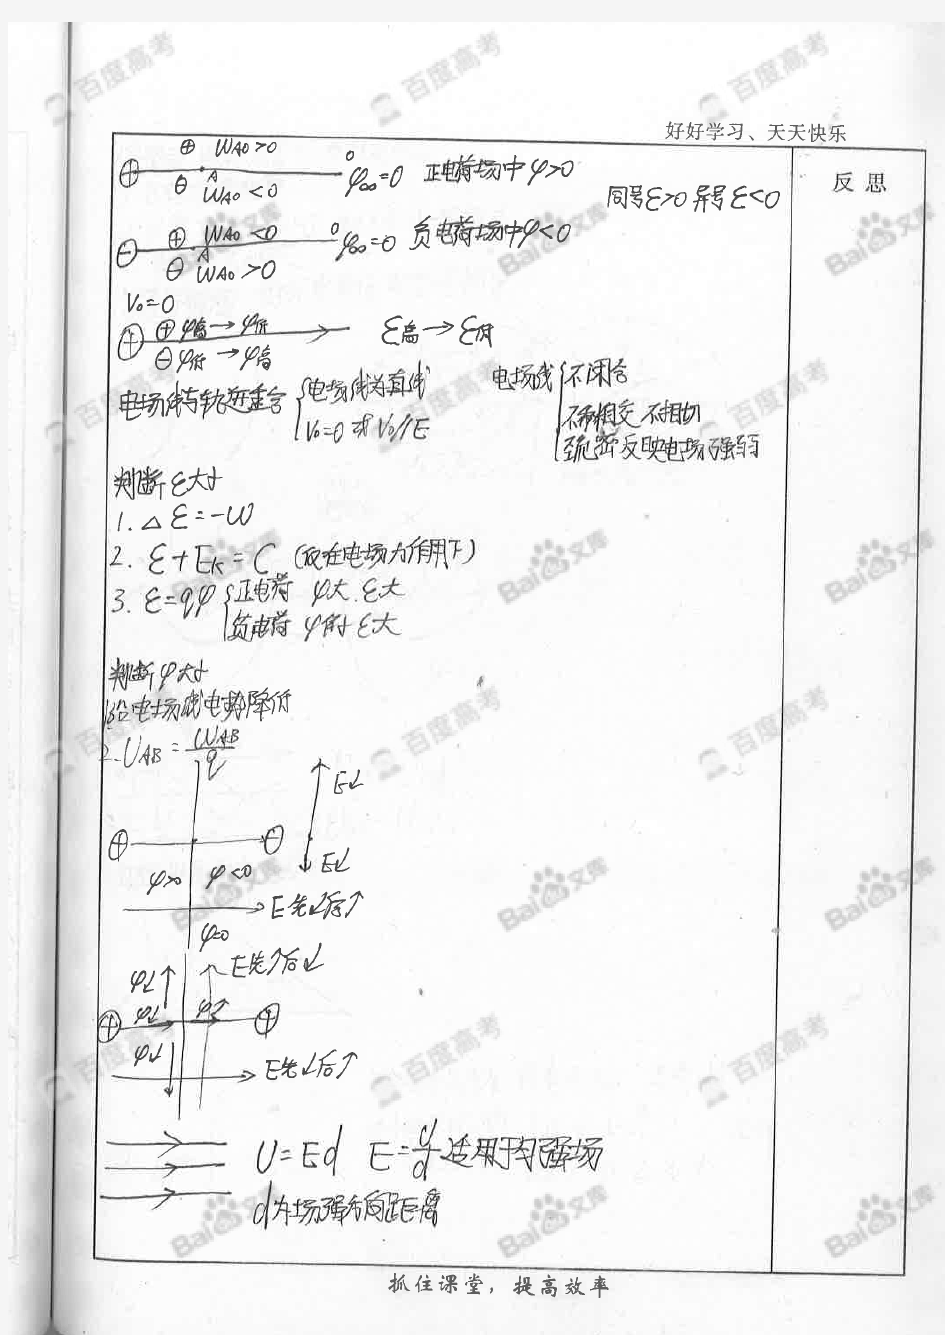 高中物理知识点笔记_part3_河北衡水中学理科学霸_2016年高考状元笔记